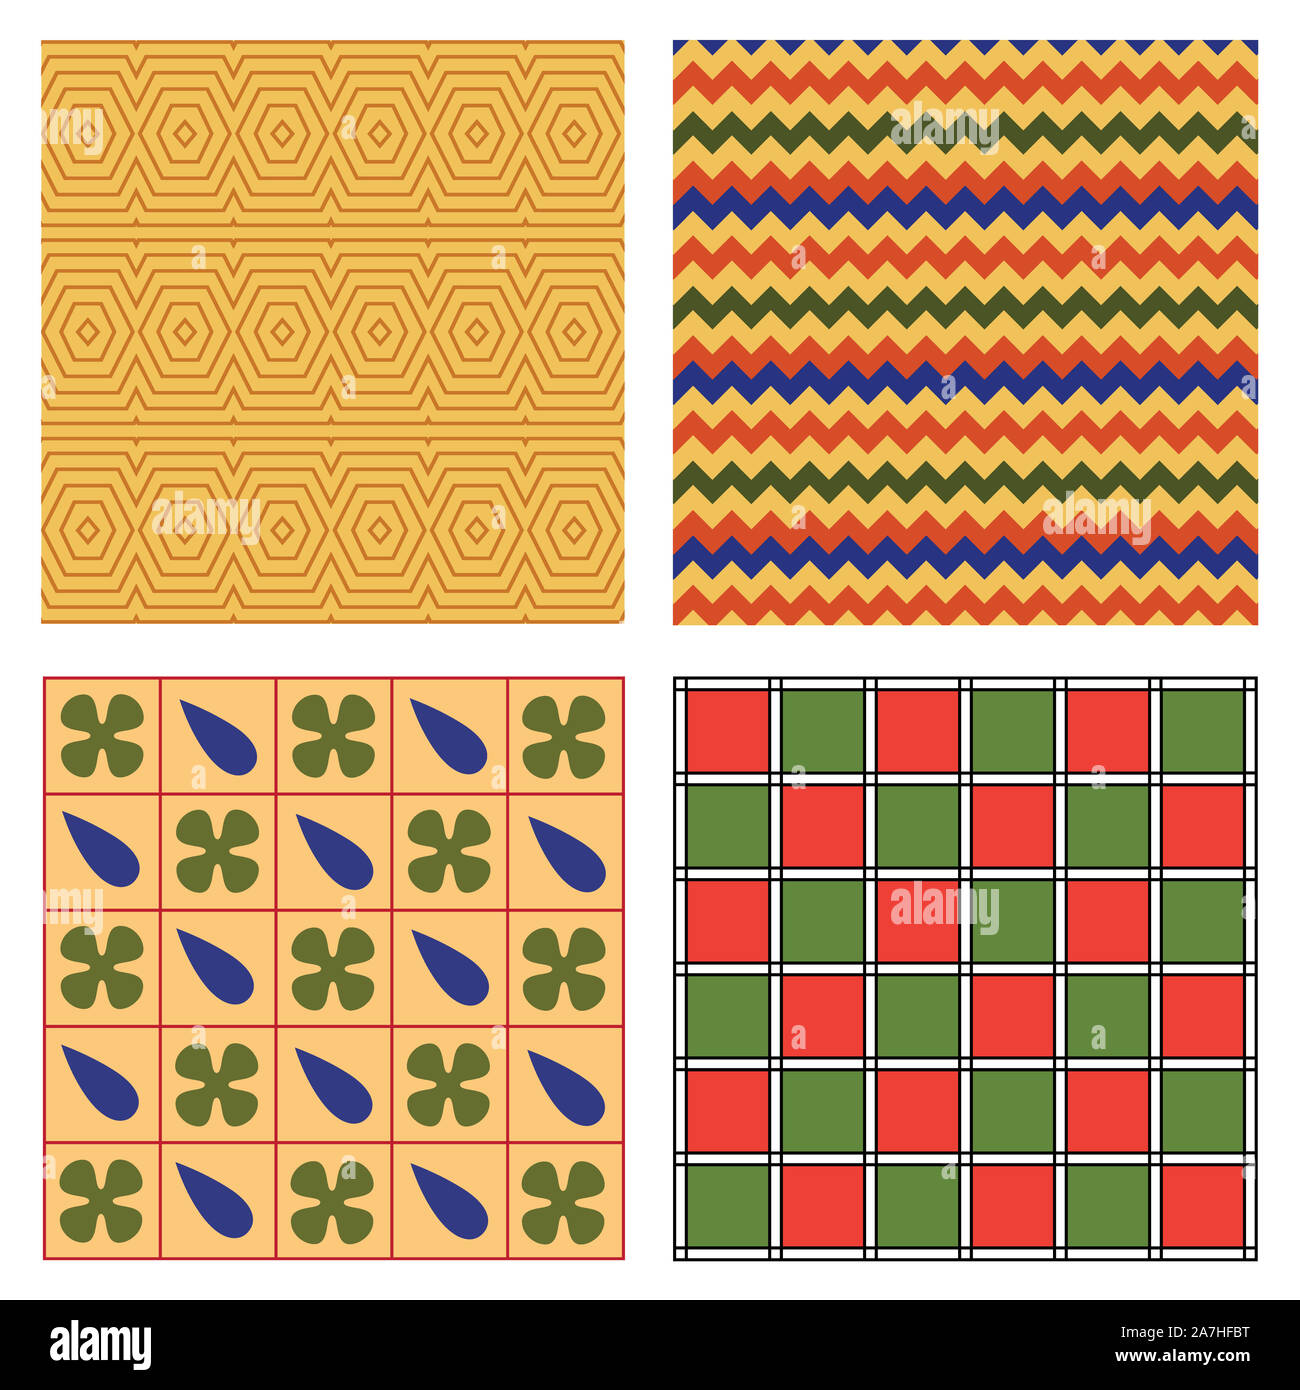 Ägypten nationalen Ornament pattern Volume 1. Ägyptische dekorative textile Elemente Hintergrund. Die afrikanische Kultur Stoff Design. Stockfoto